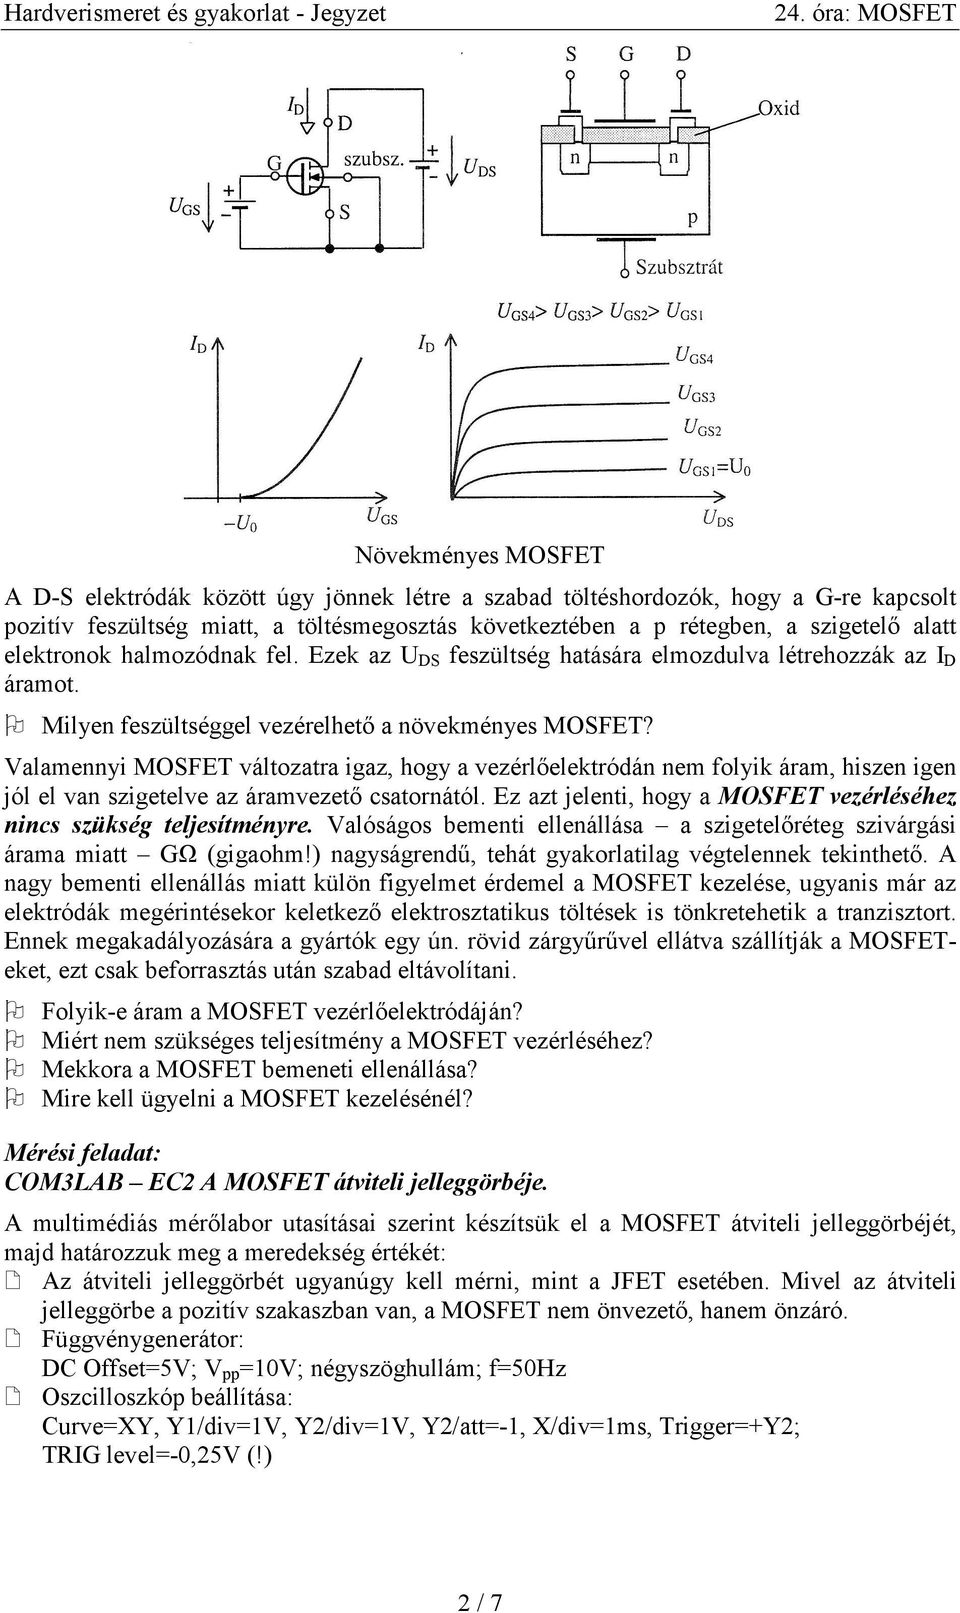 Az N csatornás kiürítéses MOSFET jelleggörbéi. - PDF Ingyenes letöltés